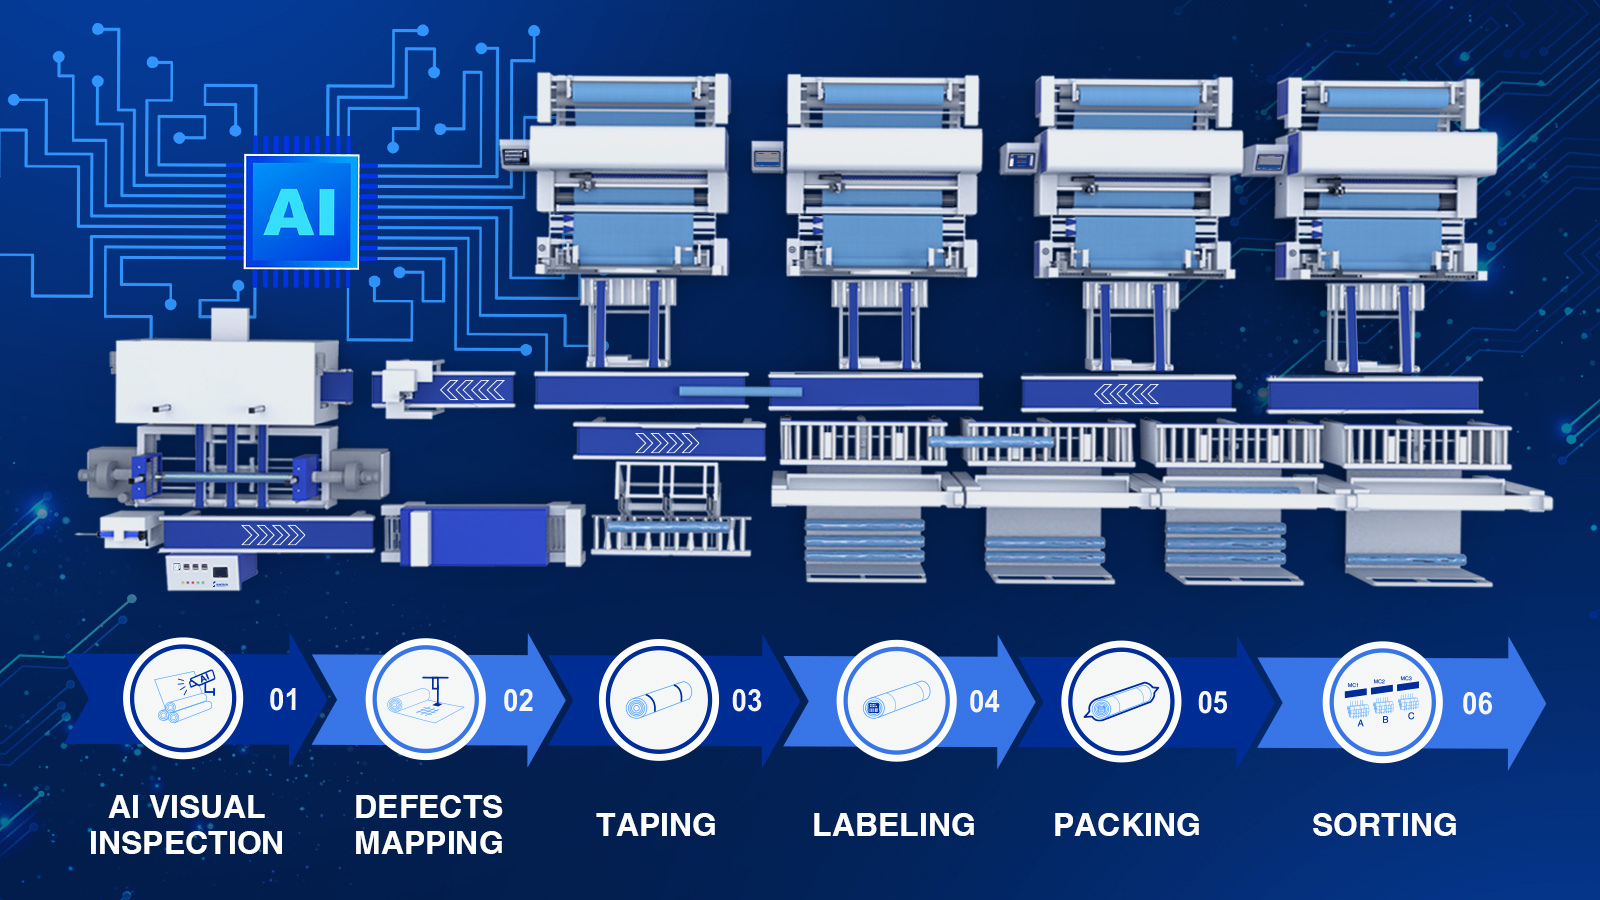 Sistema de embalaje e inspección visual Ai proceso totalmente automatizado